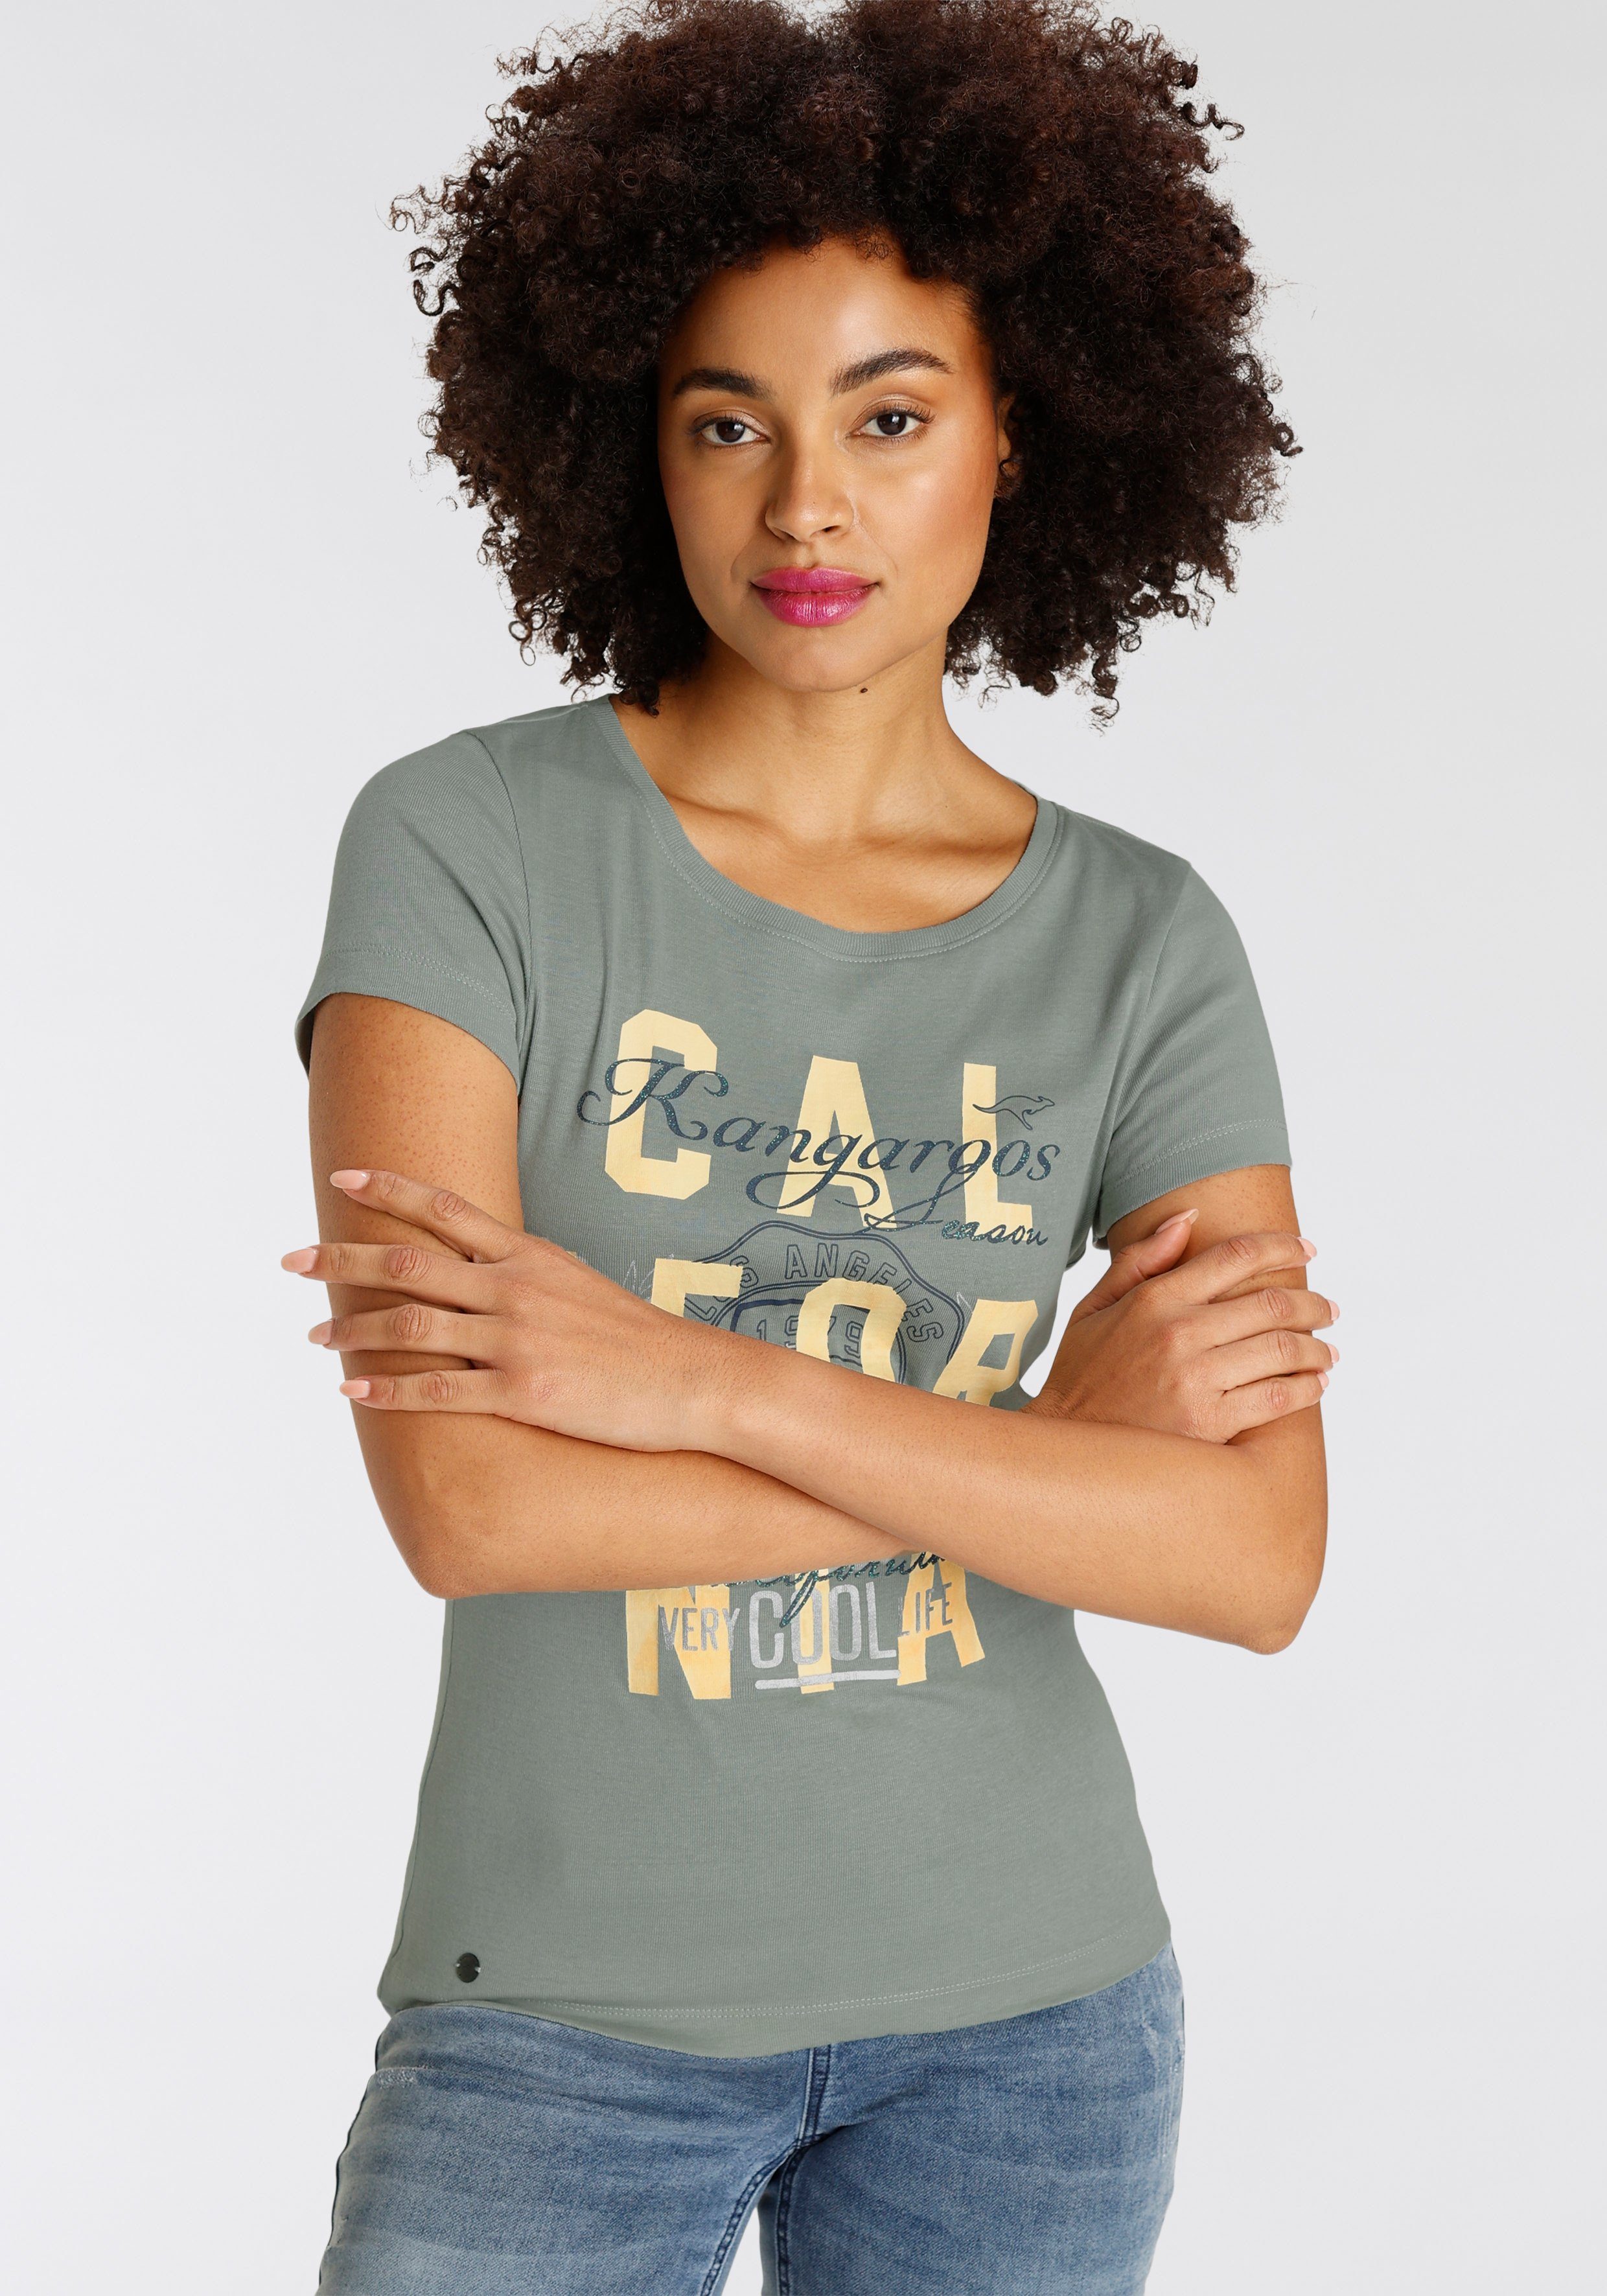 Print-Shirt khakigrau im NEUE KOLLEKTION - Logodruck mit California-Style KangaROOS